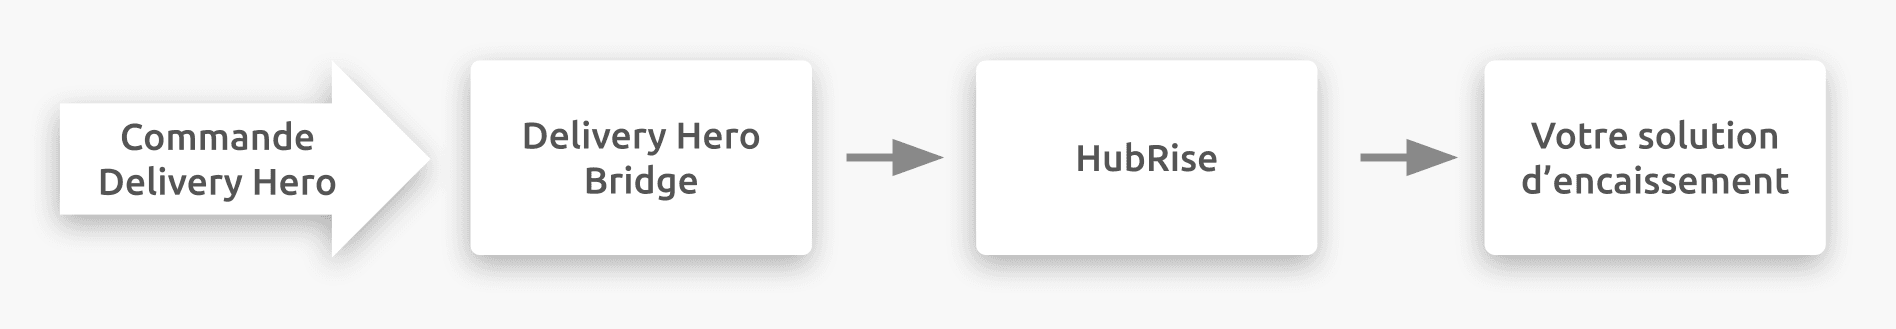 Diagramme du flux de connexion entre Delivery Hero, Delivery Hero Bridge, et HubRise